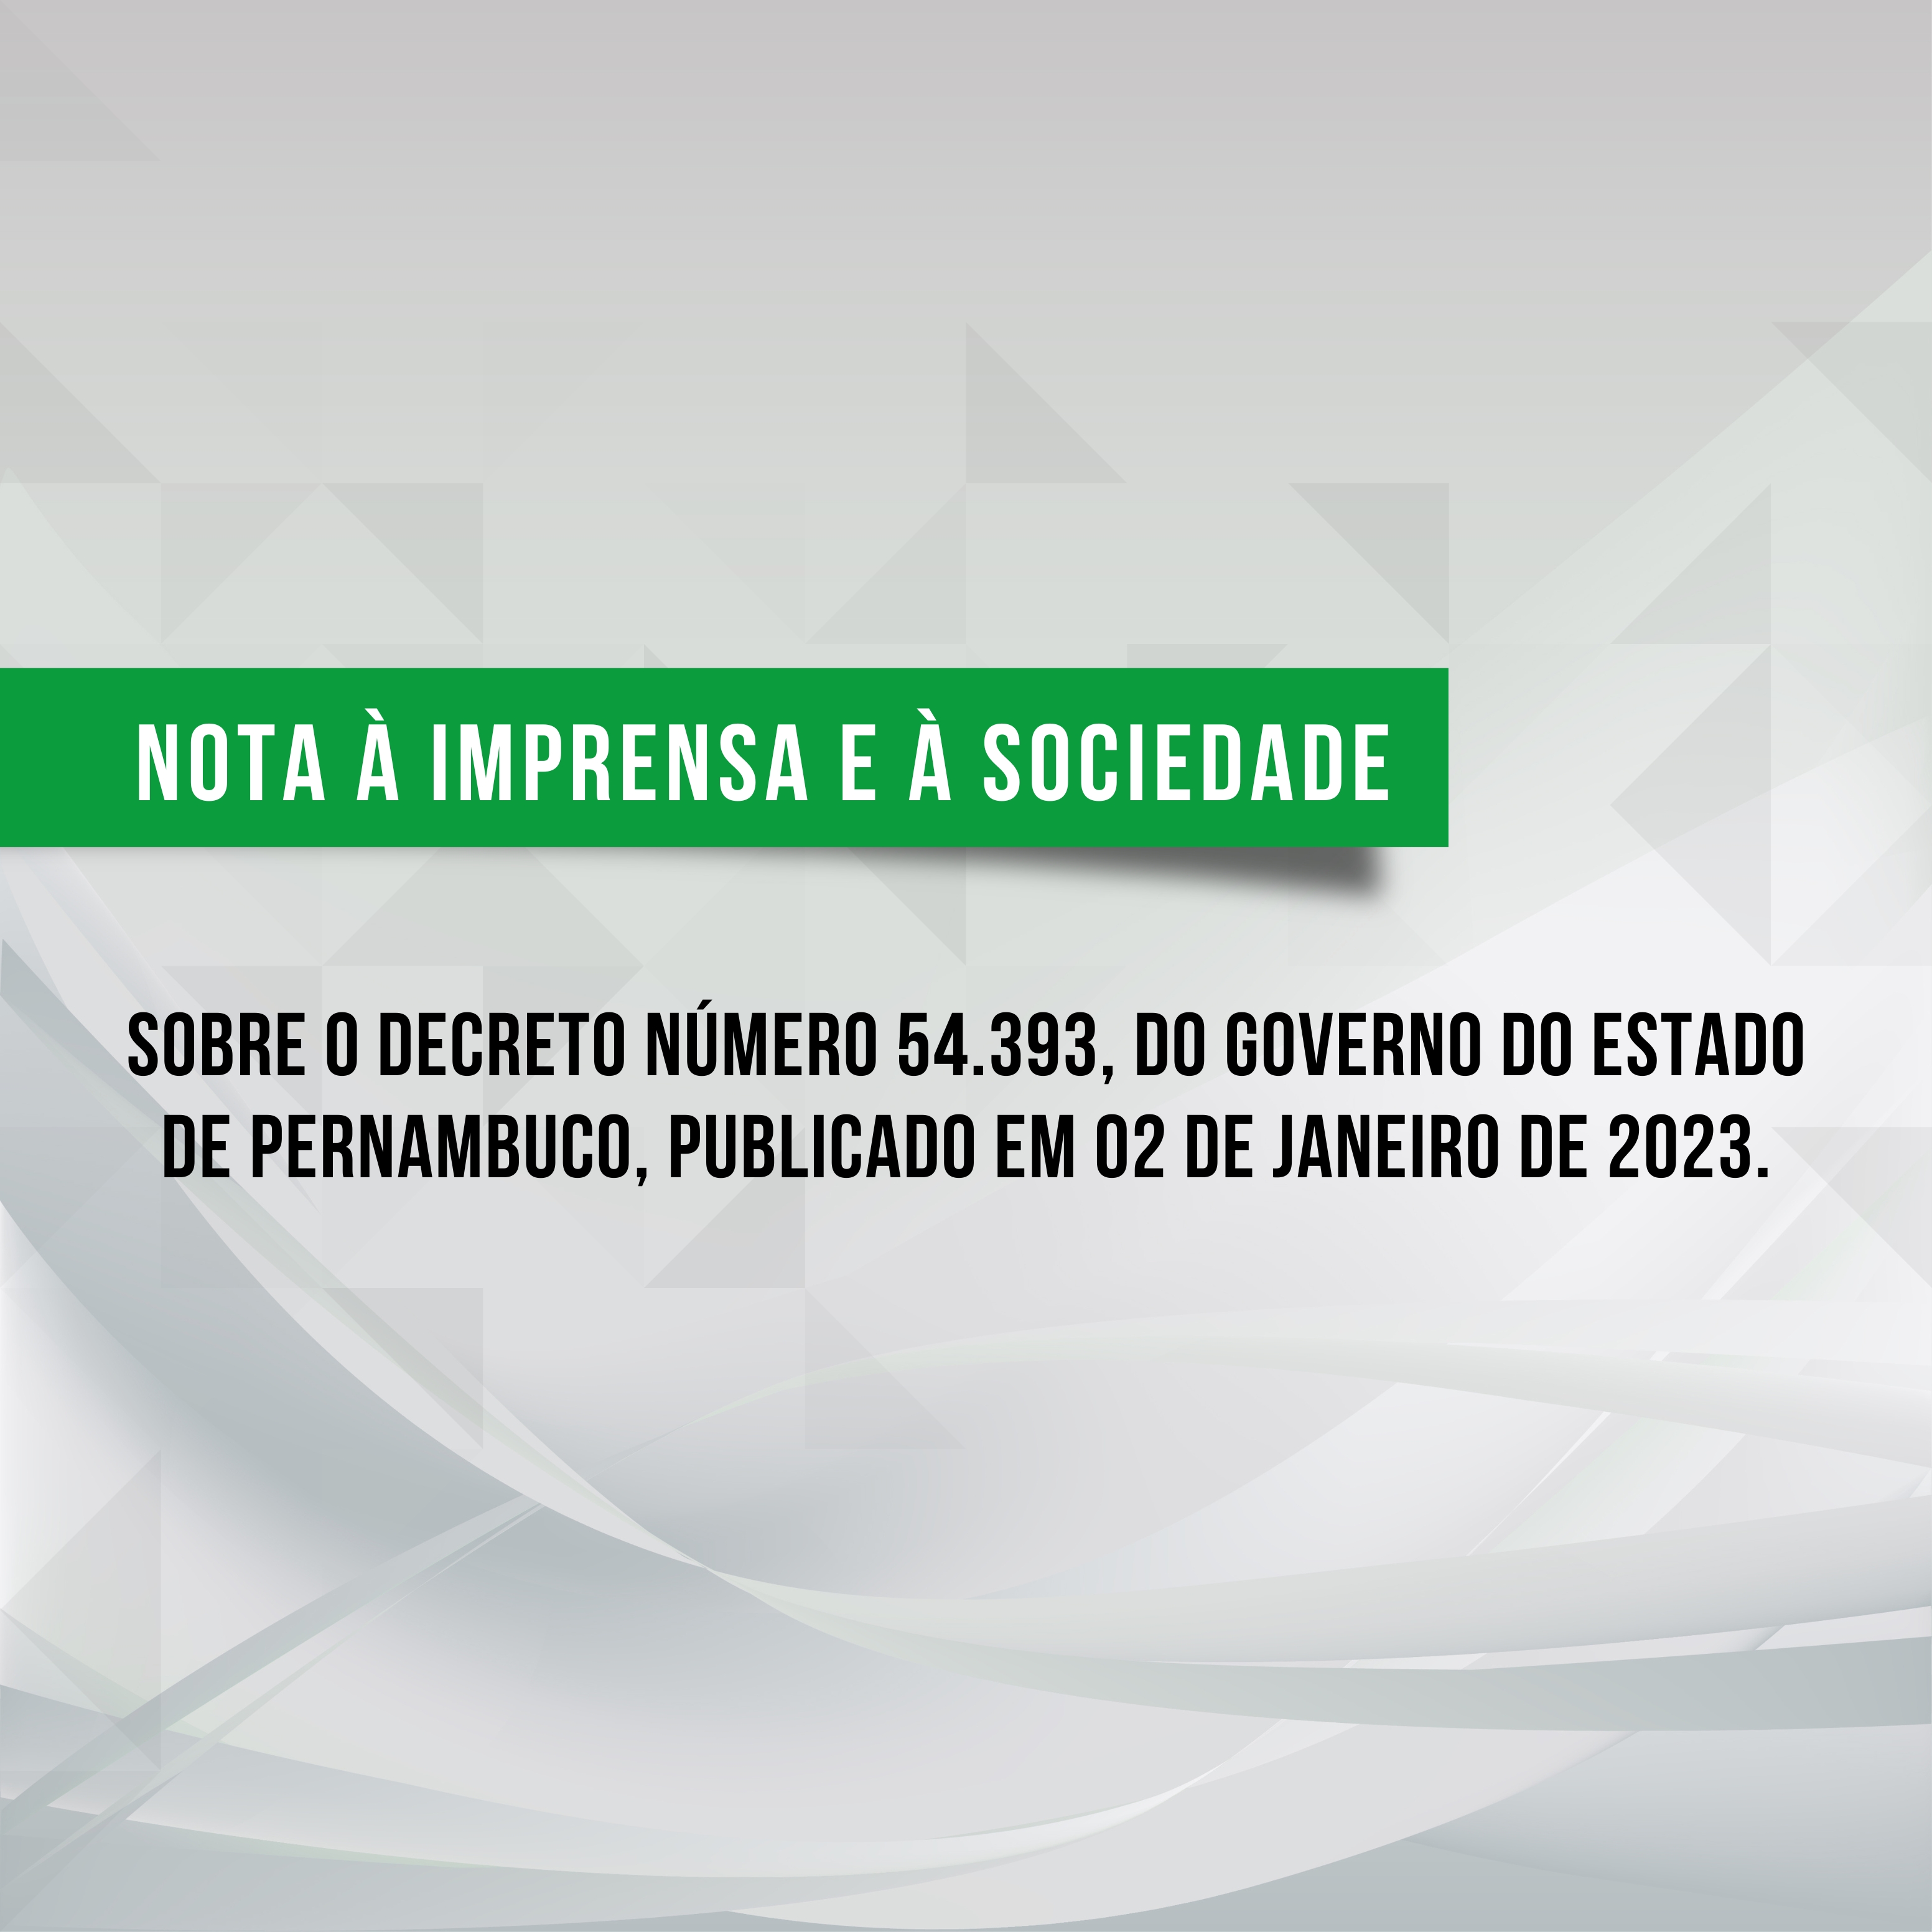 NOTA | Sobre o Decreto número 54.393, do Governo do Estado de Pernambuco, publicado em 02 de janeiro de 2023.